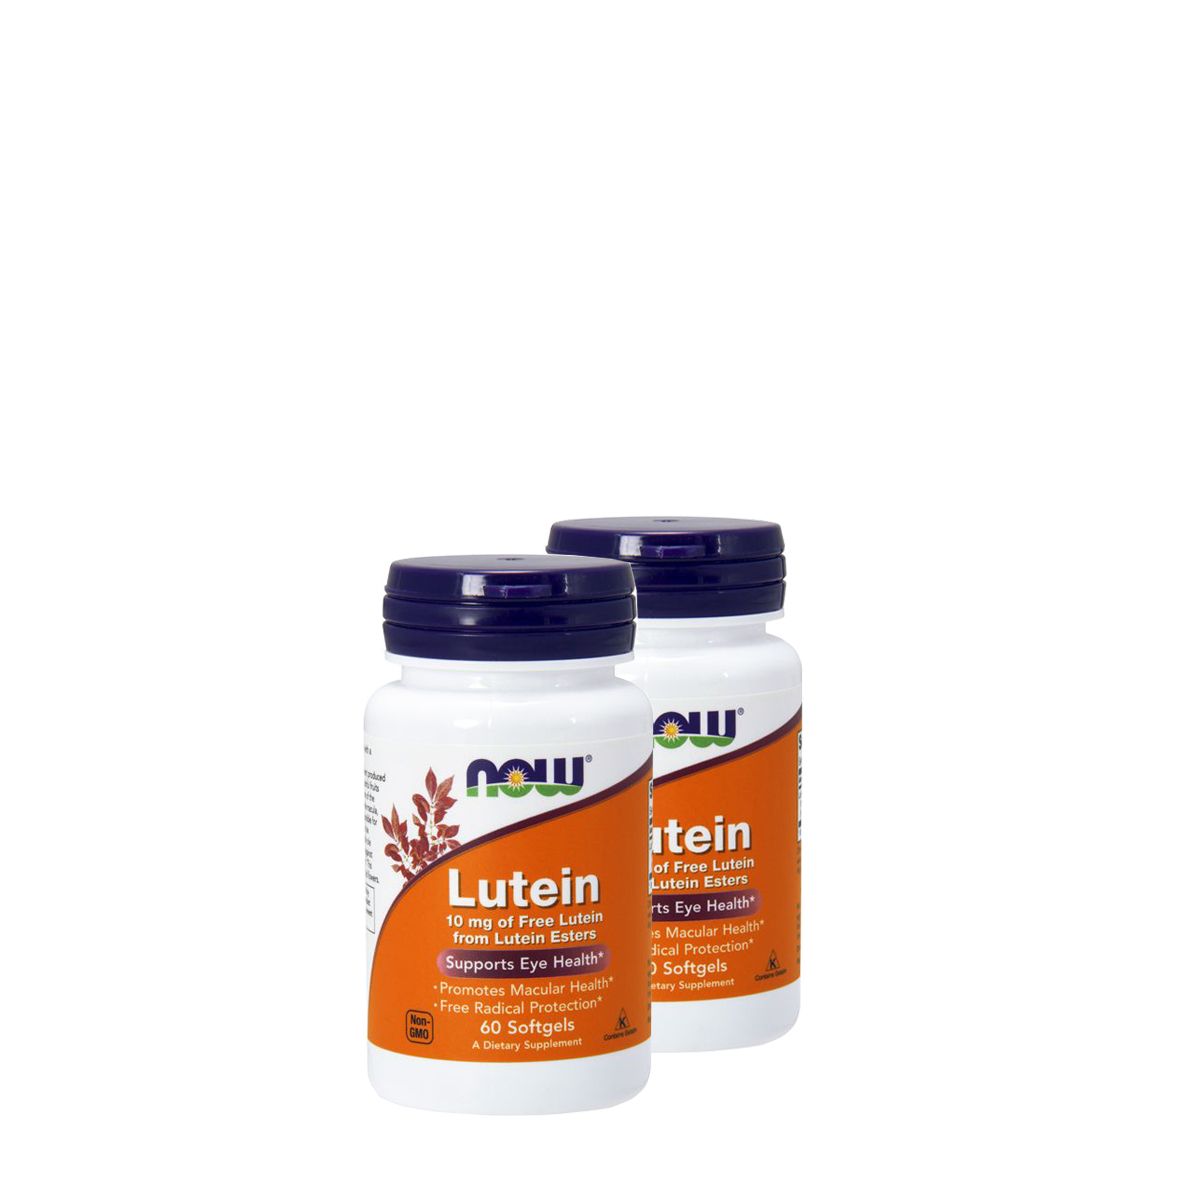 Lutein 10 mg lutein észterből, Now Free Lutein from Lutein Esters, 2x60 kapszula